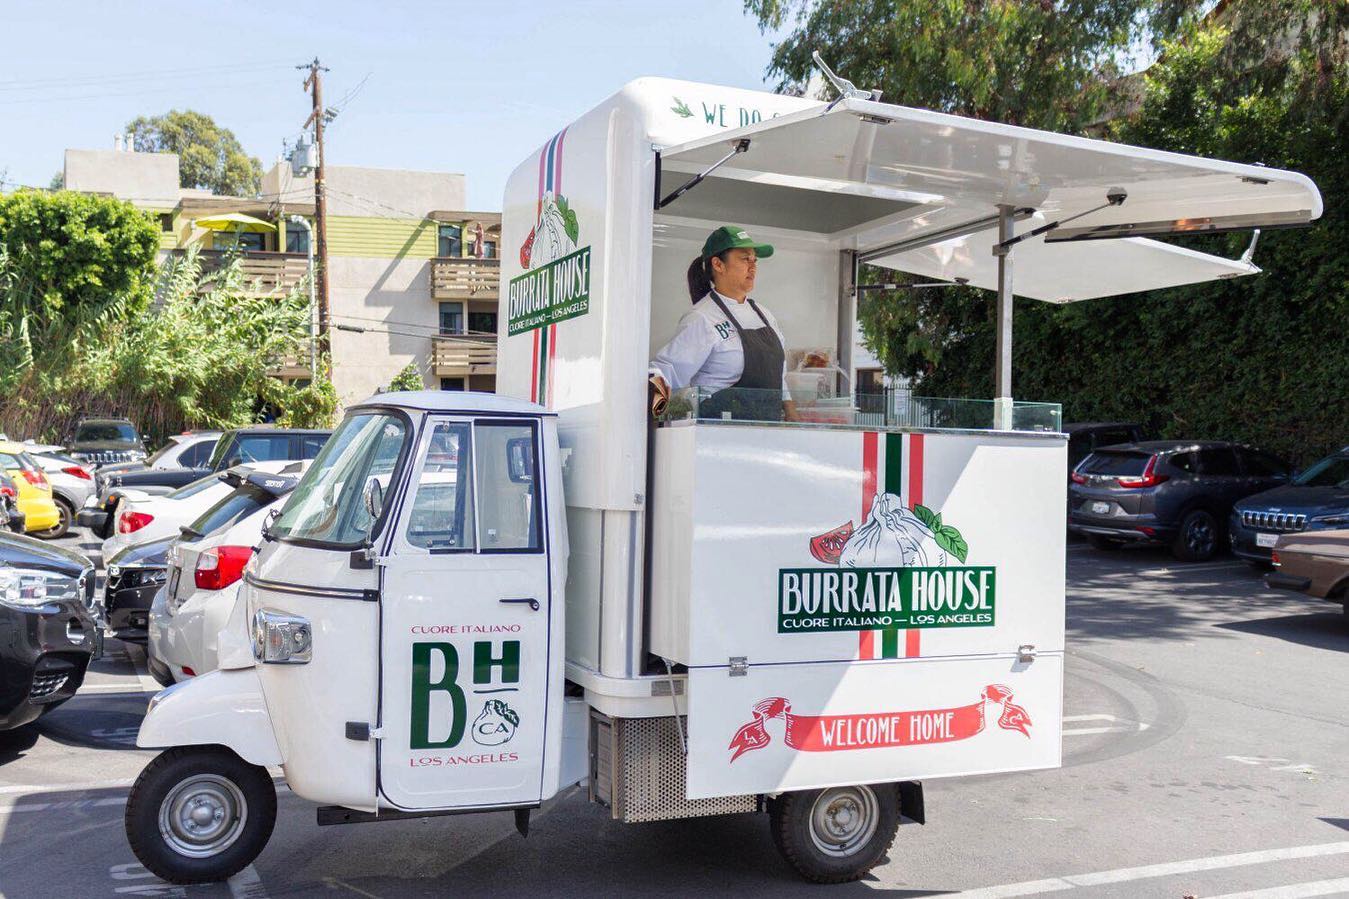 Burrata House Food cart on a sunny day